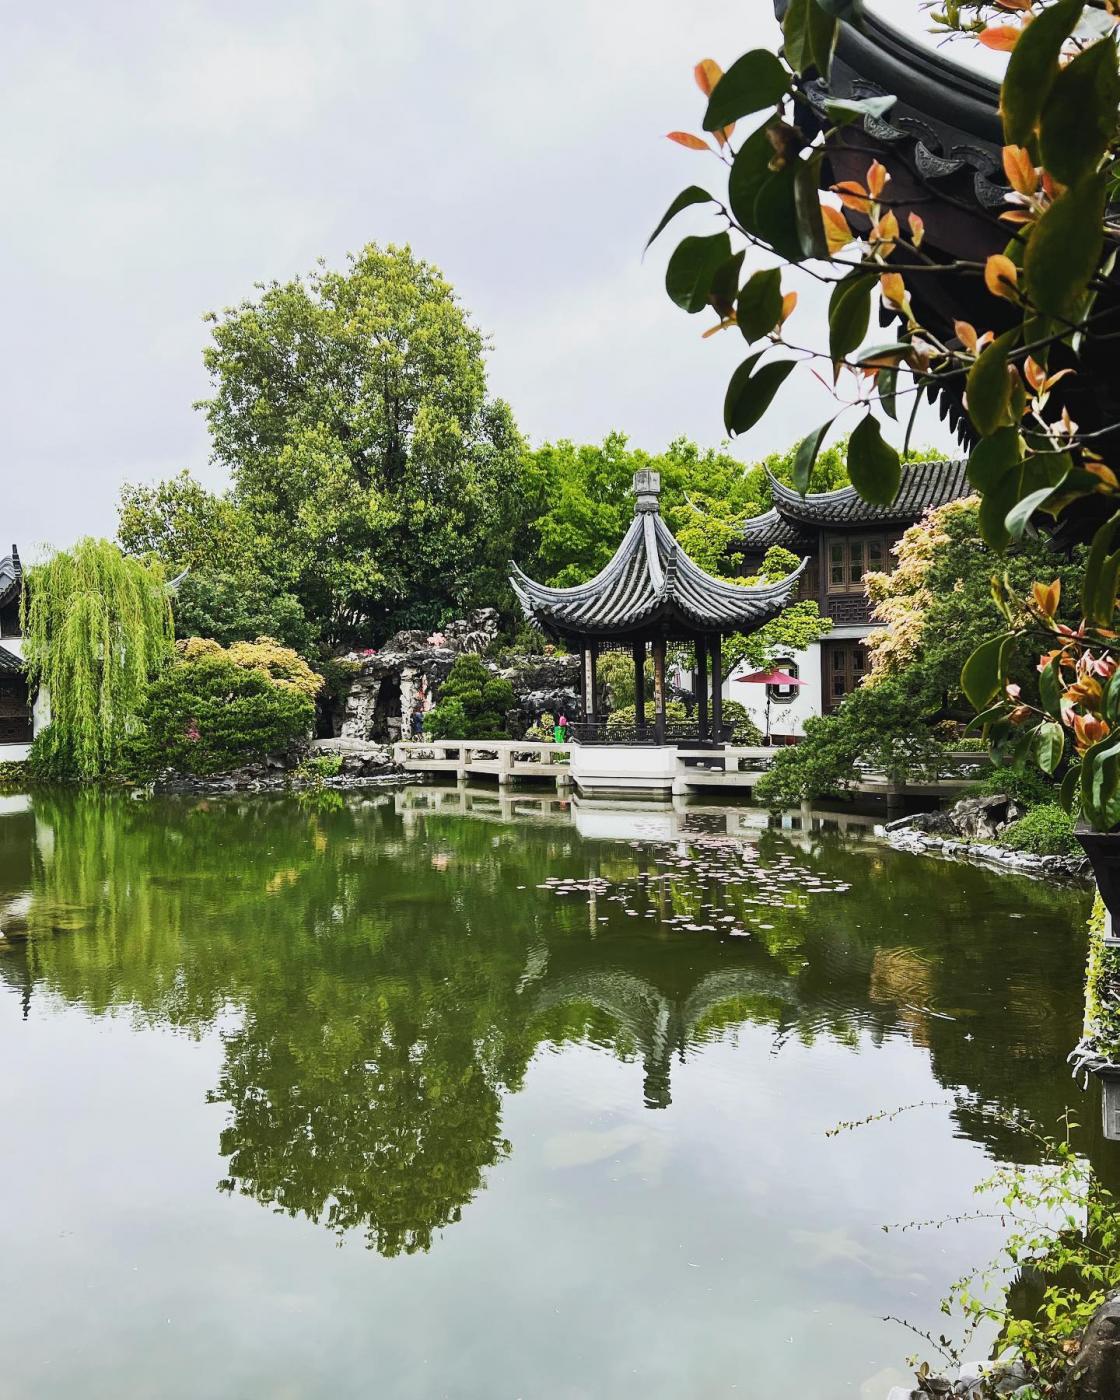 Photograph of Lan Su Garden